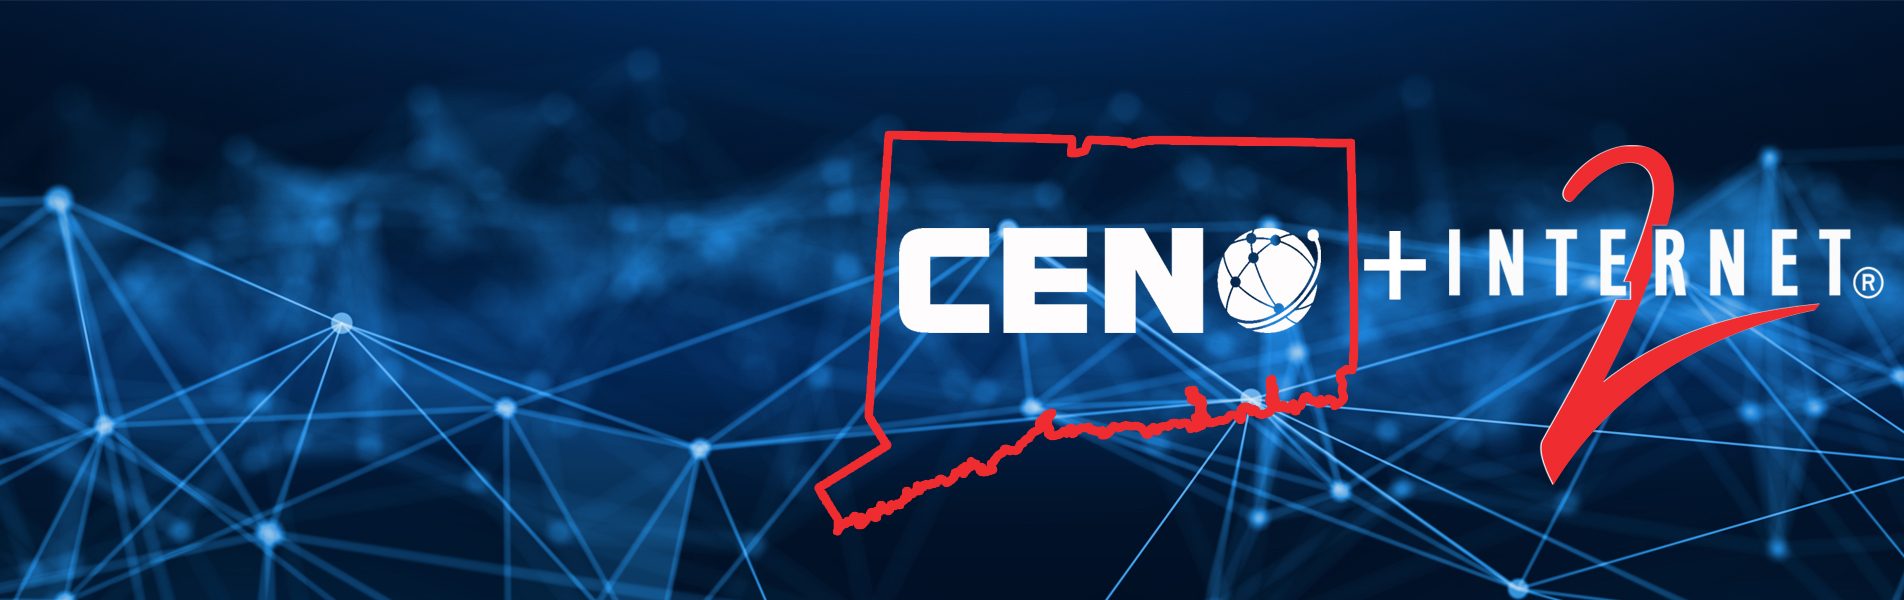 CEN logo and Internet2 logo